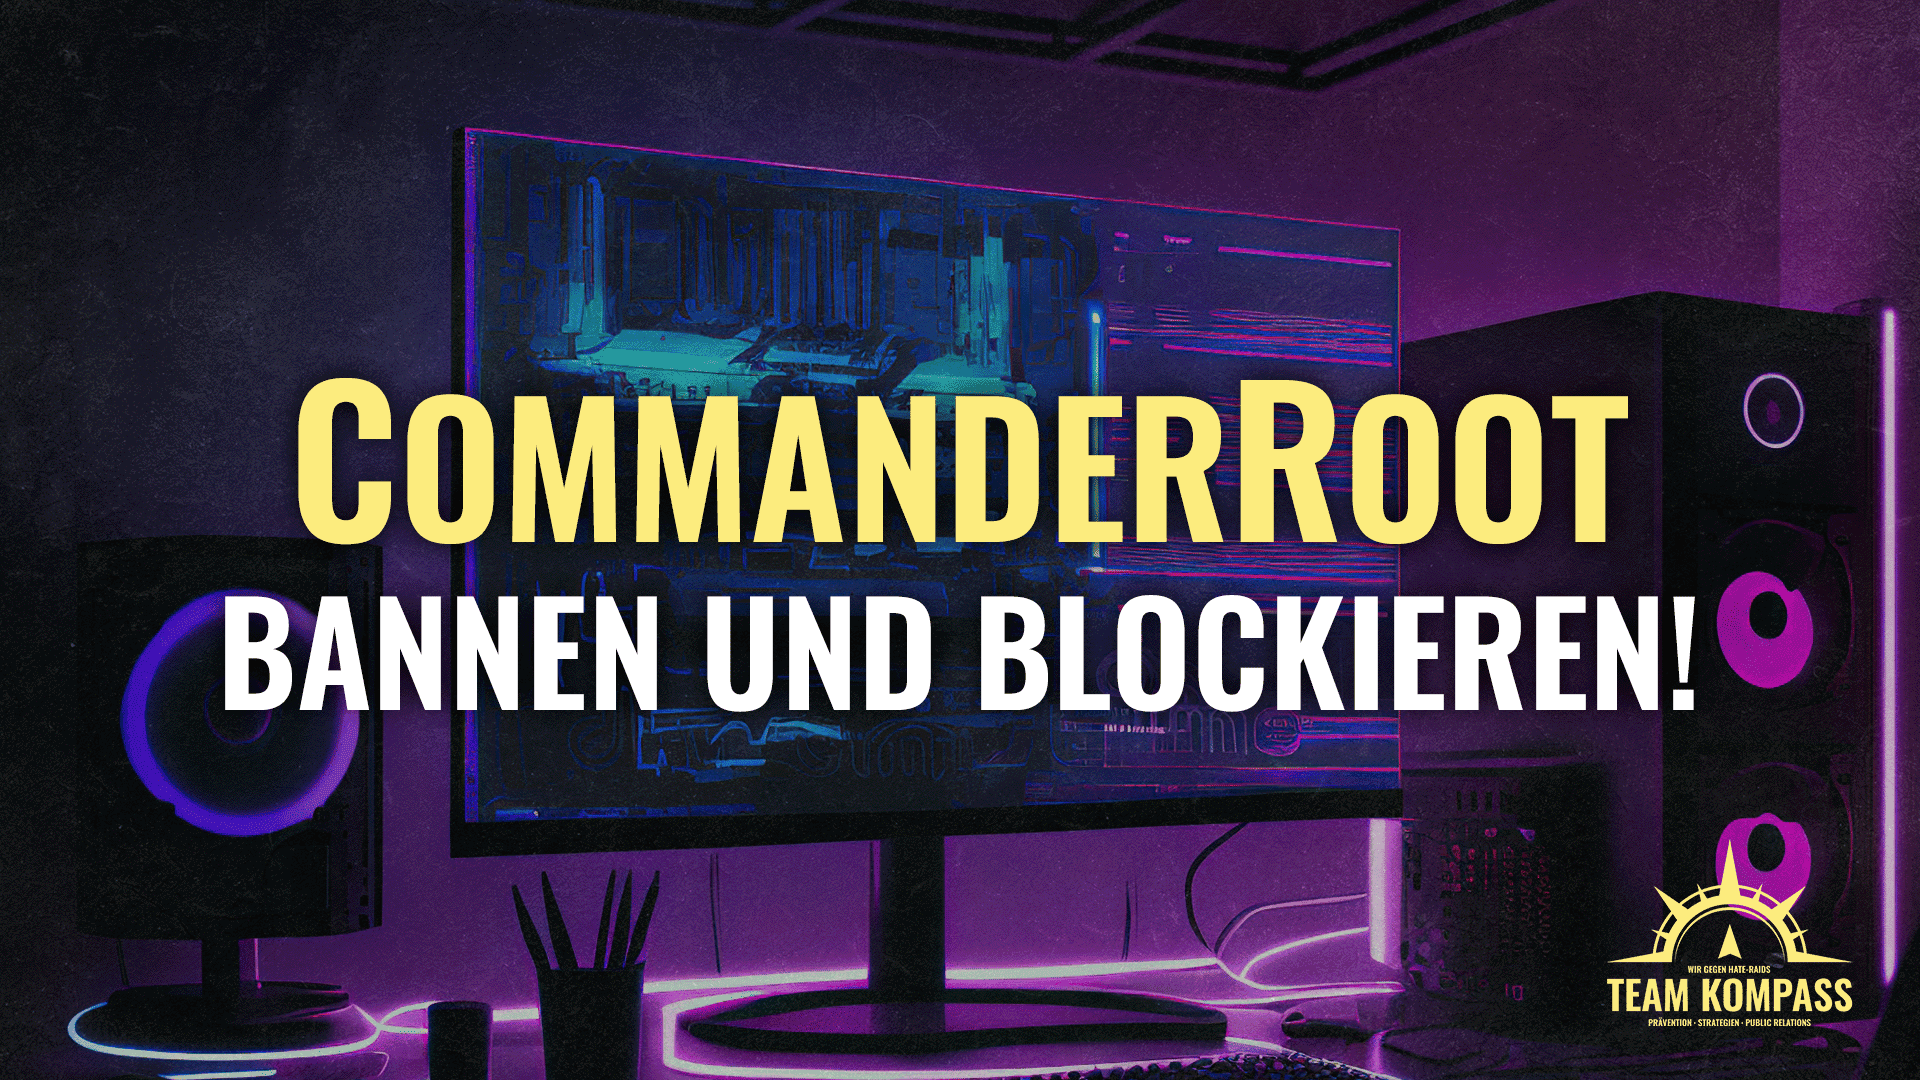 Bannen und blockieren! CommanderRoot Moderation Tools